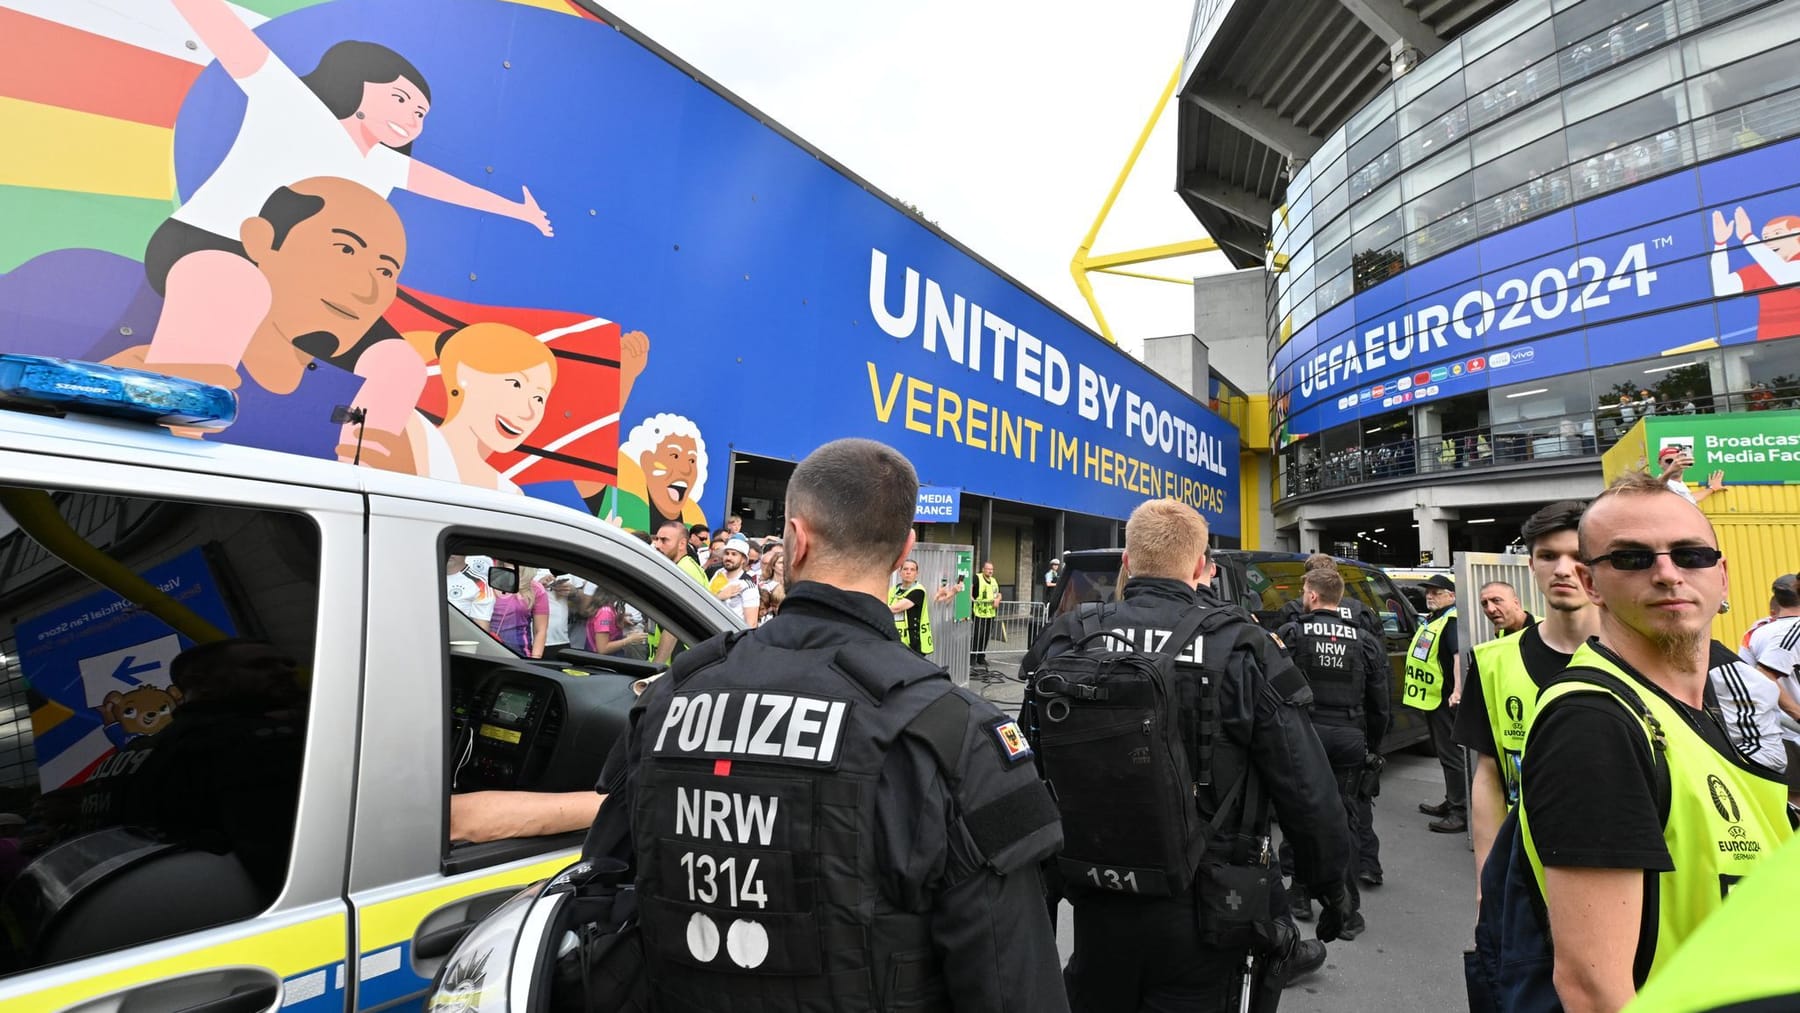 Los aficionados irán a Dortmund la próxima vez – más noticias